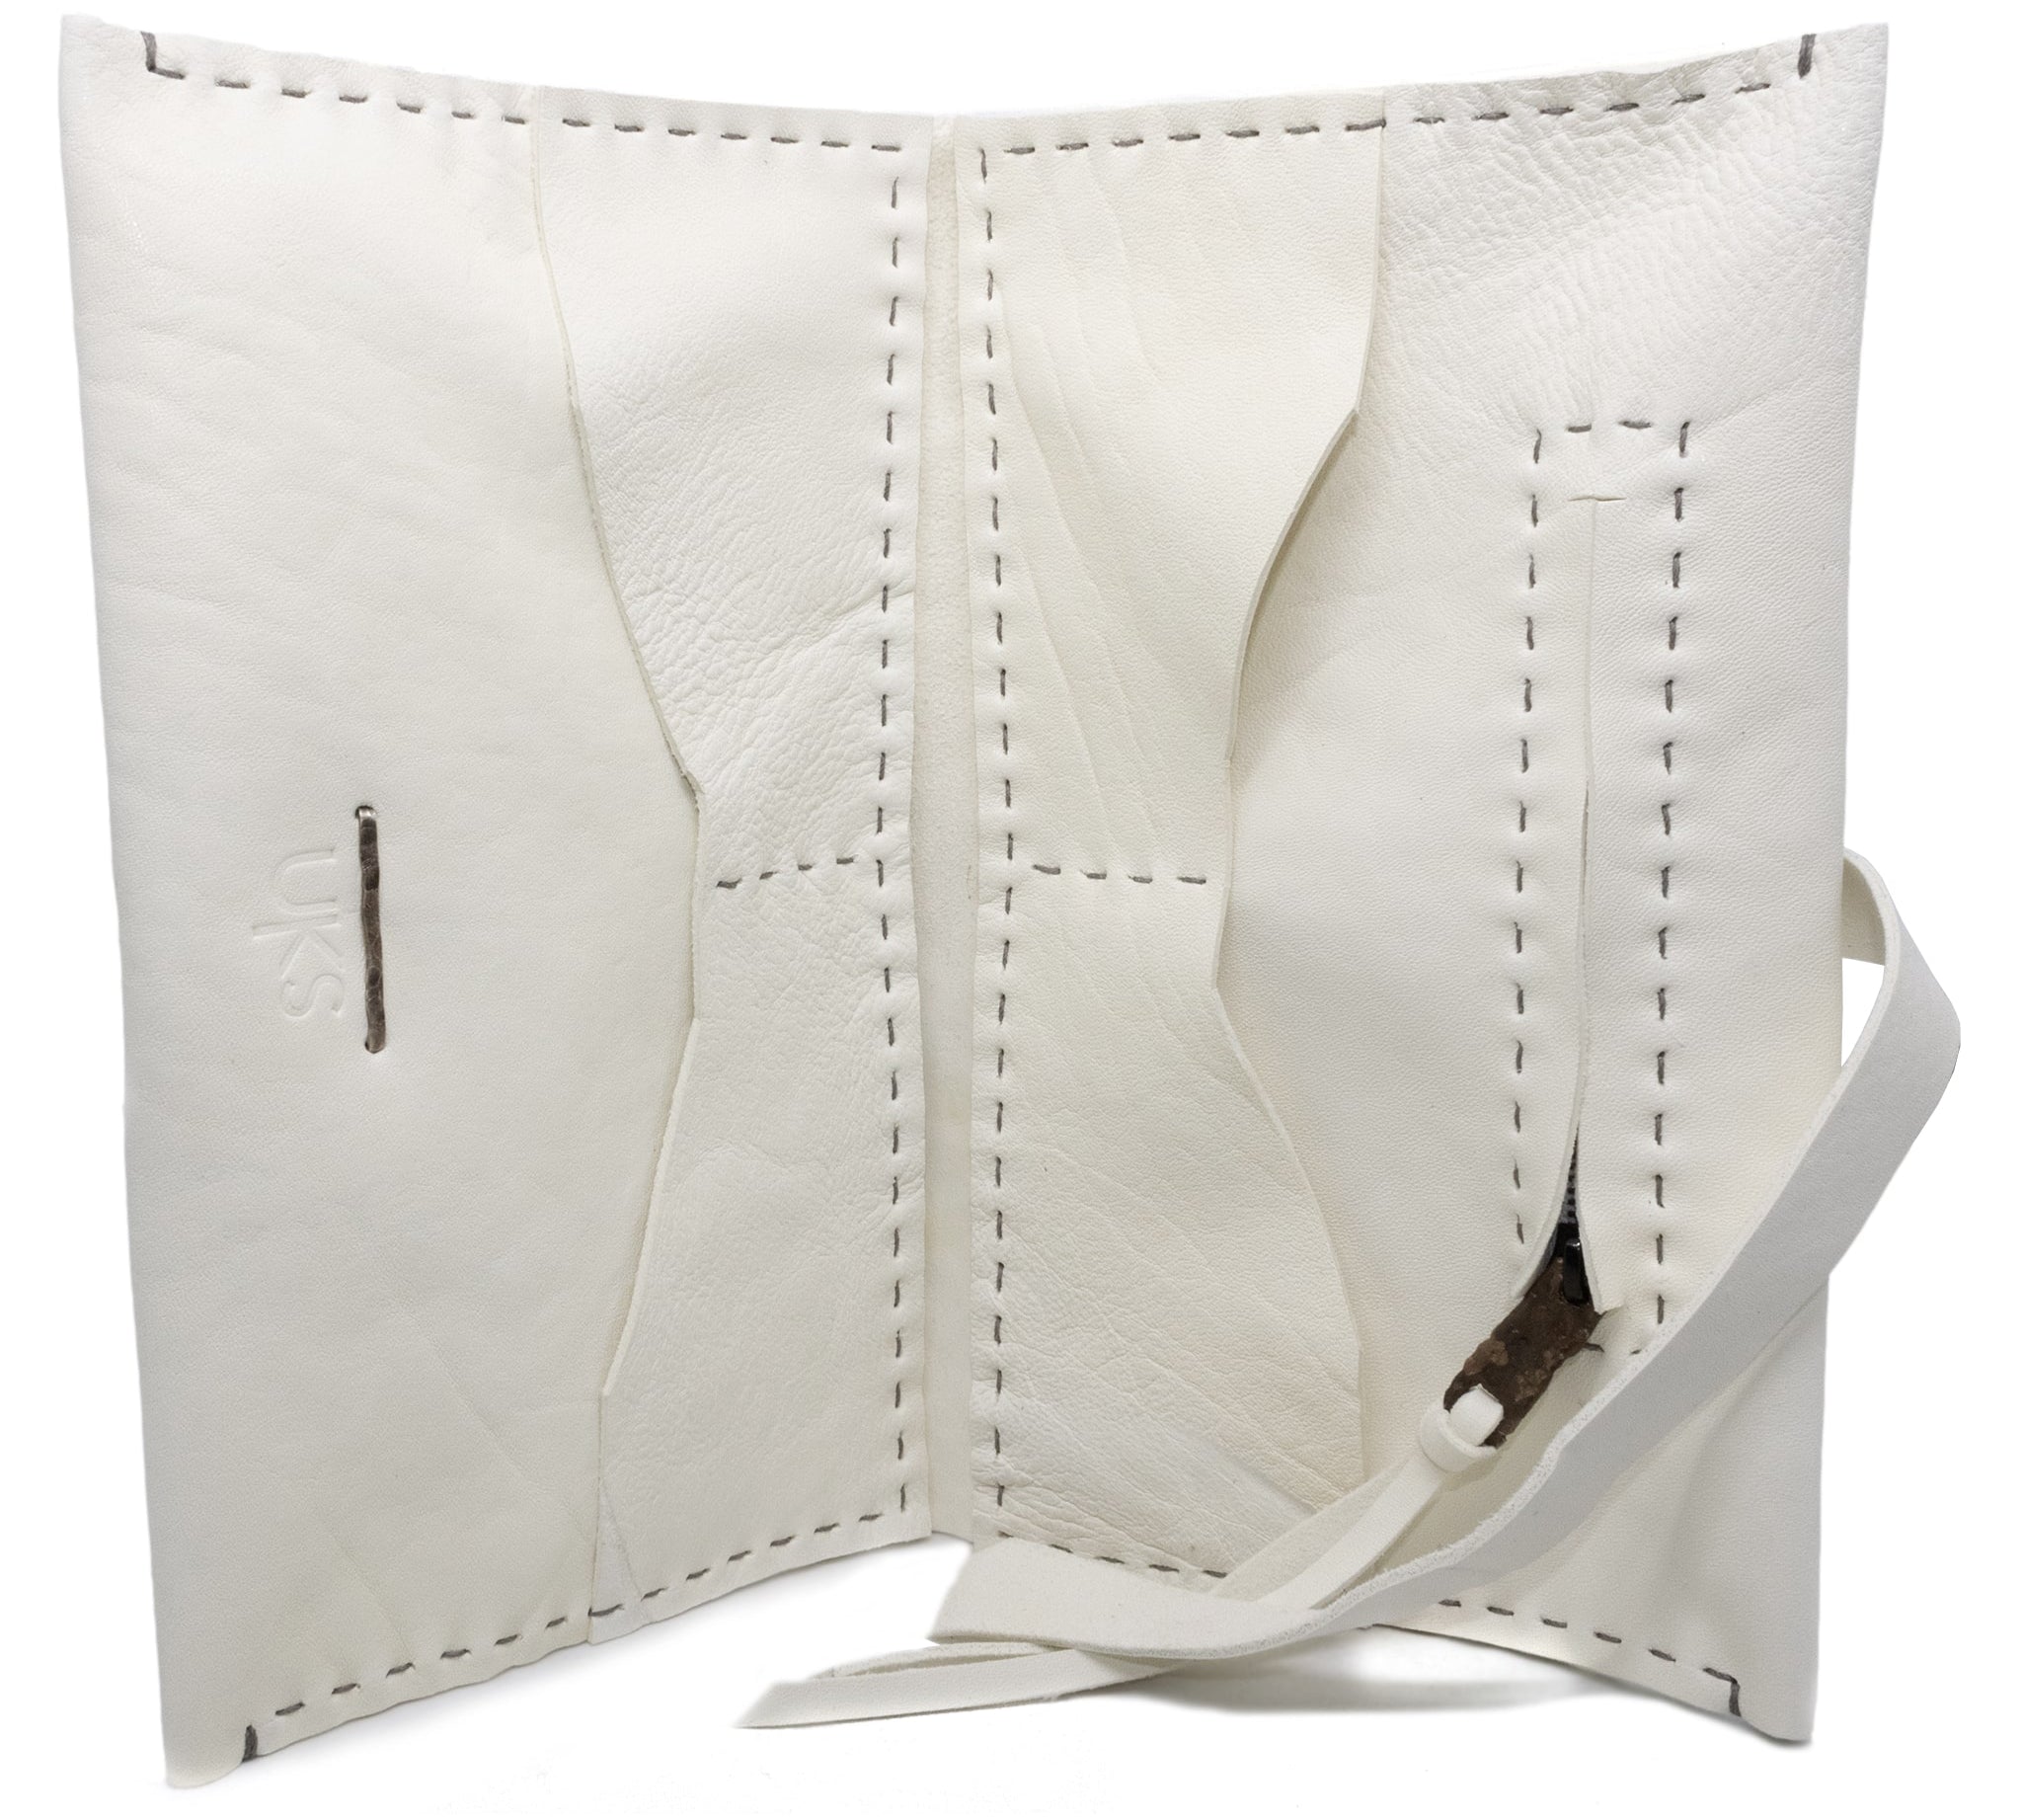 atelier skn albino culatta leather long wallet